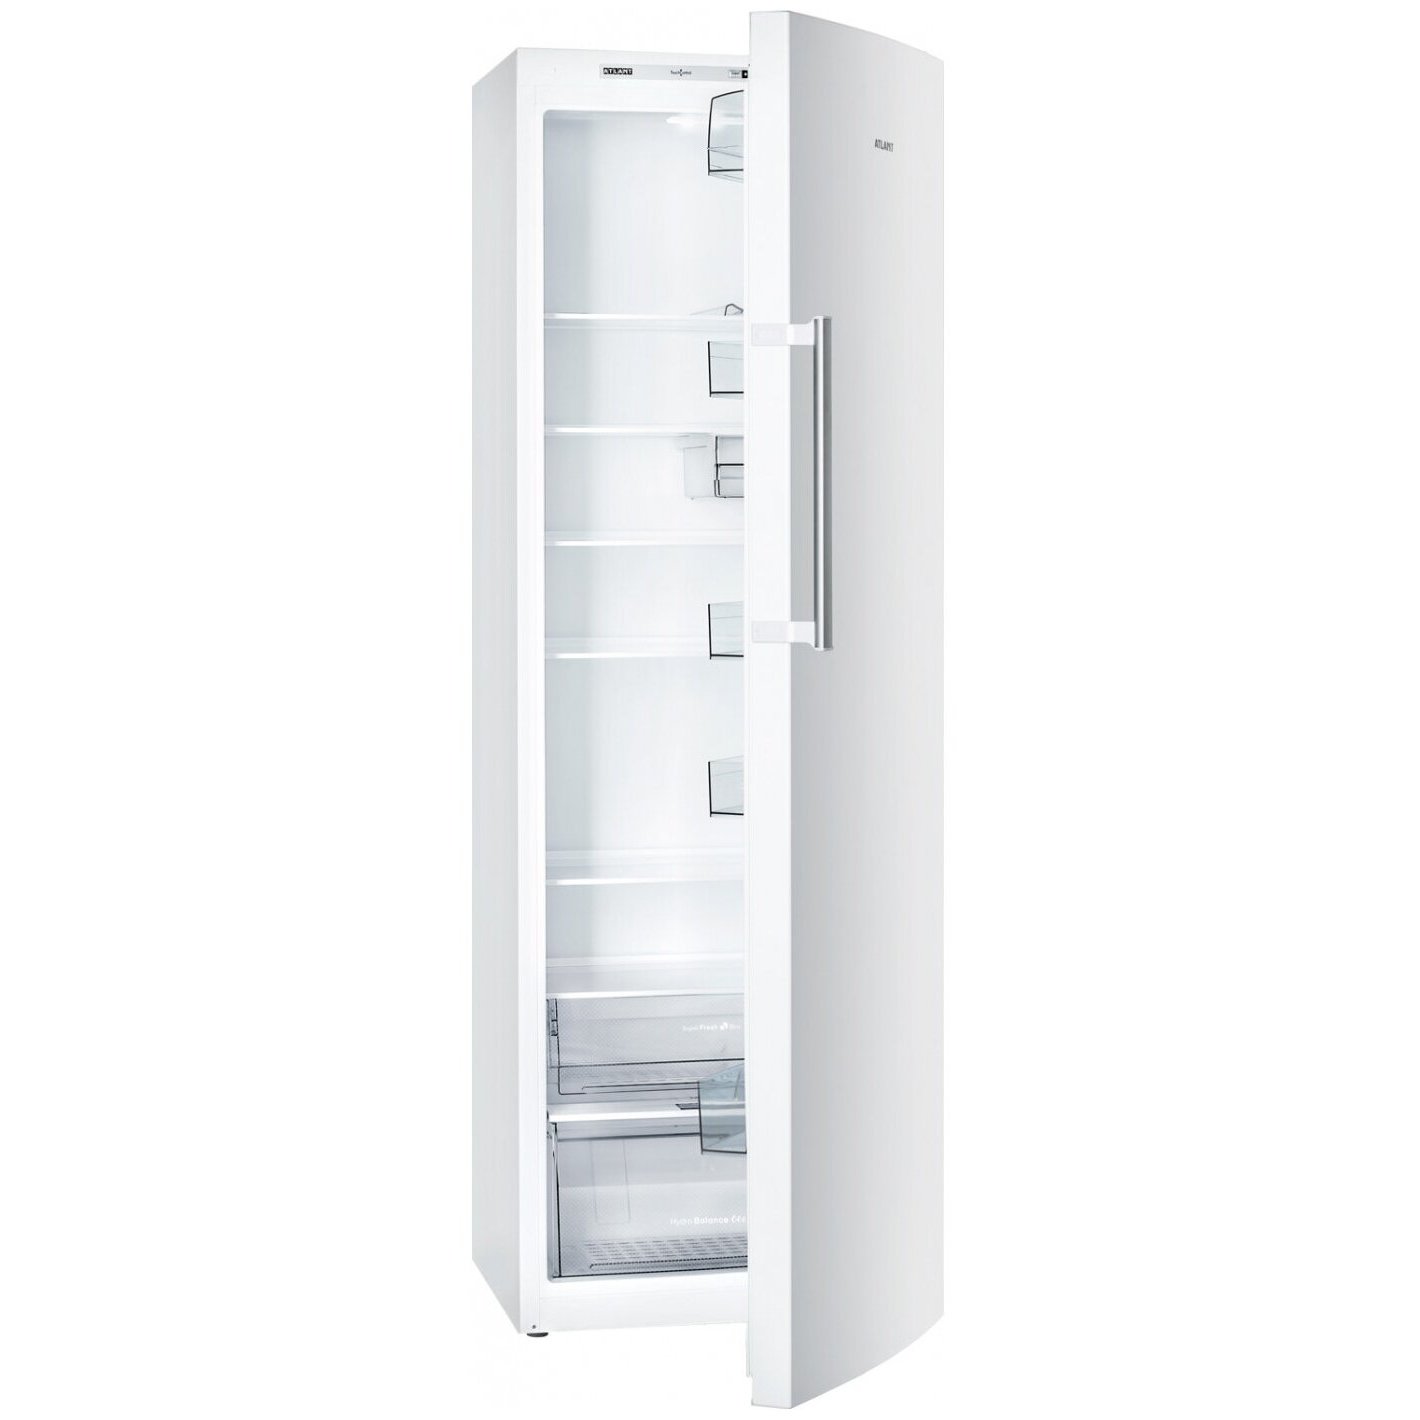 Купить однокамерный холодильник атлант. Холодильник Атлант 1602-100. Однокамерный холодильник ATLANT Х 1602-100. Холодильник Атлант без морозильной камеры 1602-100. Холодильник Атлант 1602 однокамерный.